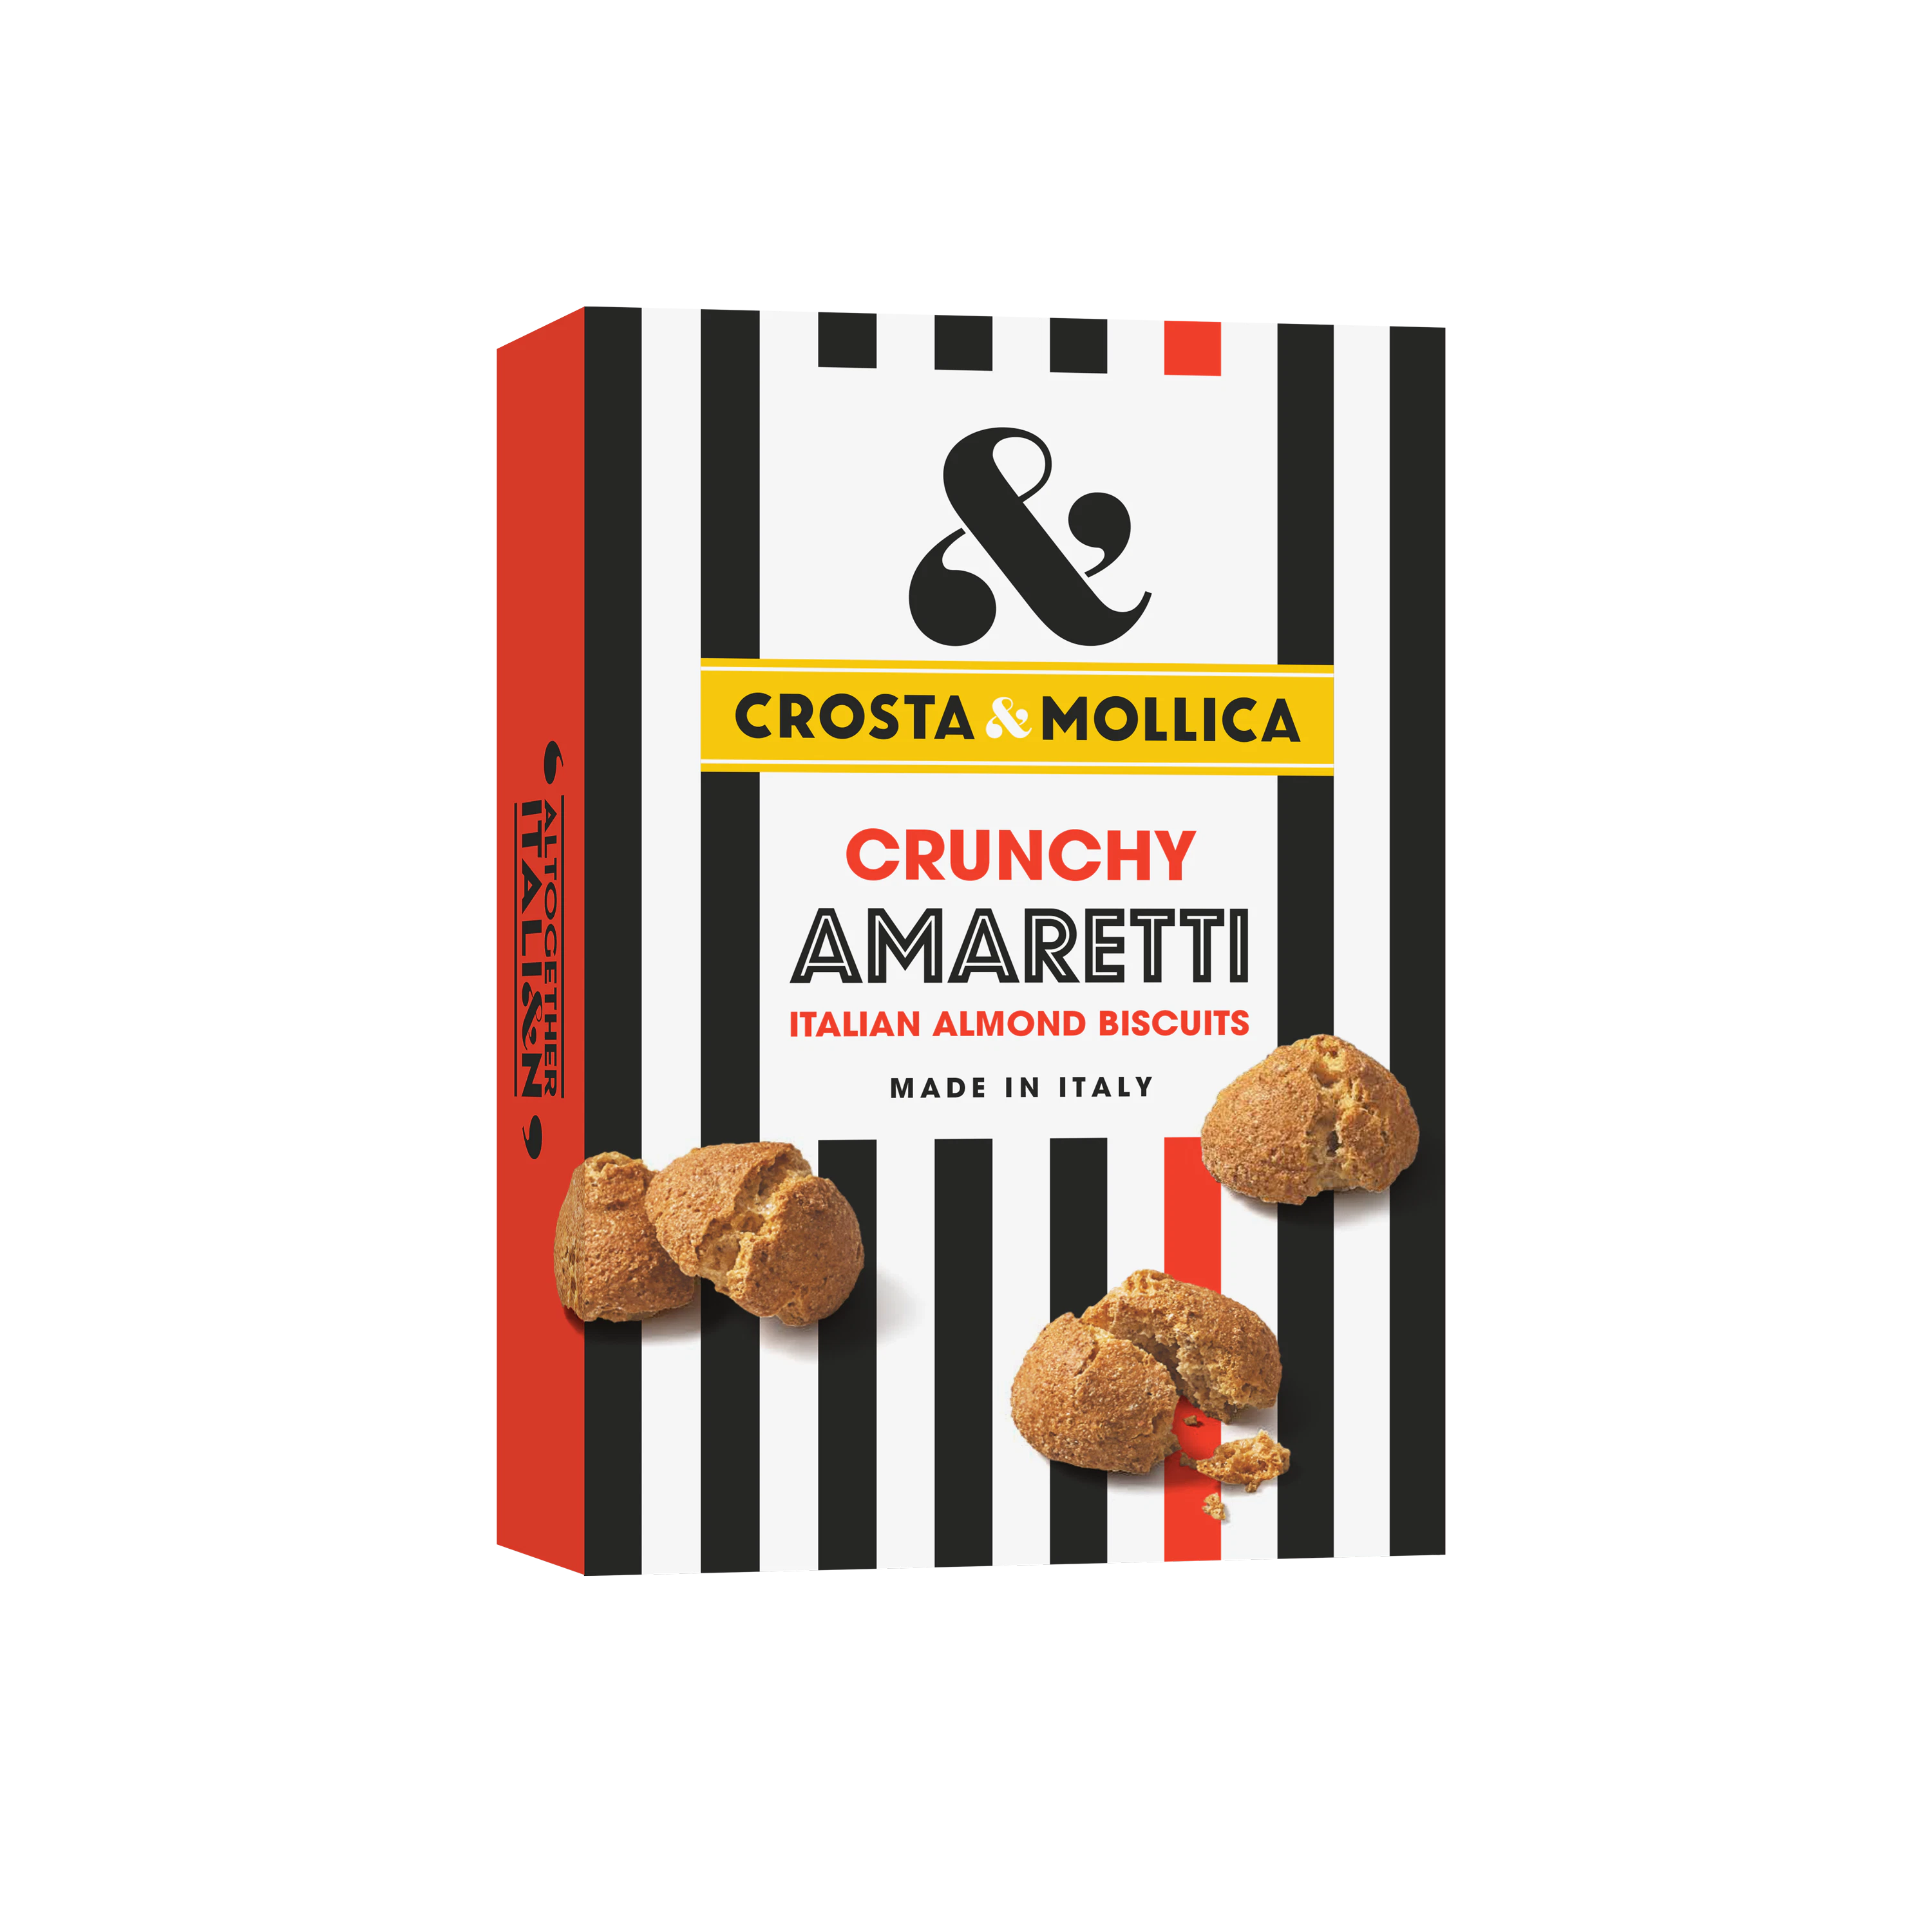 Crunchy Amaretti